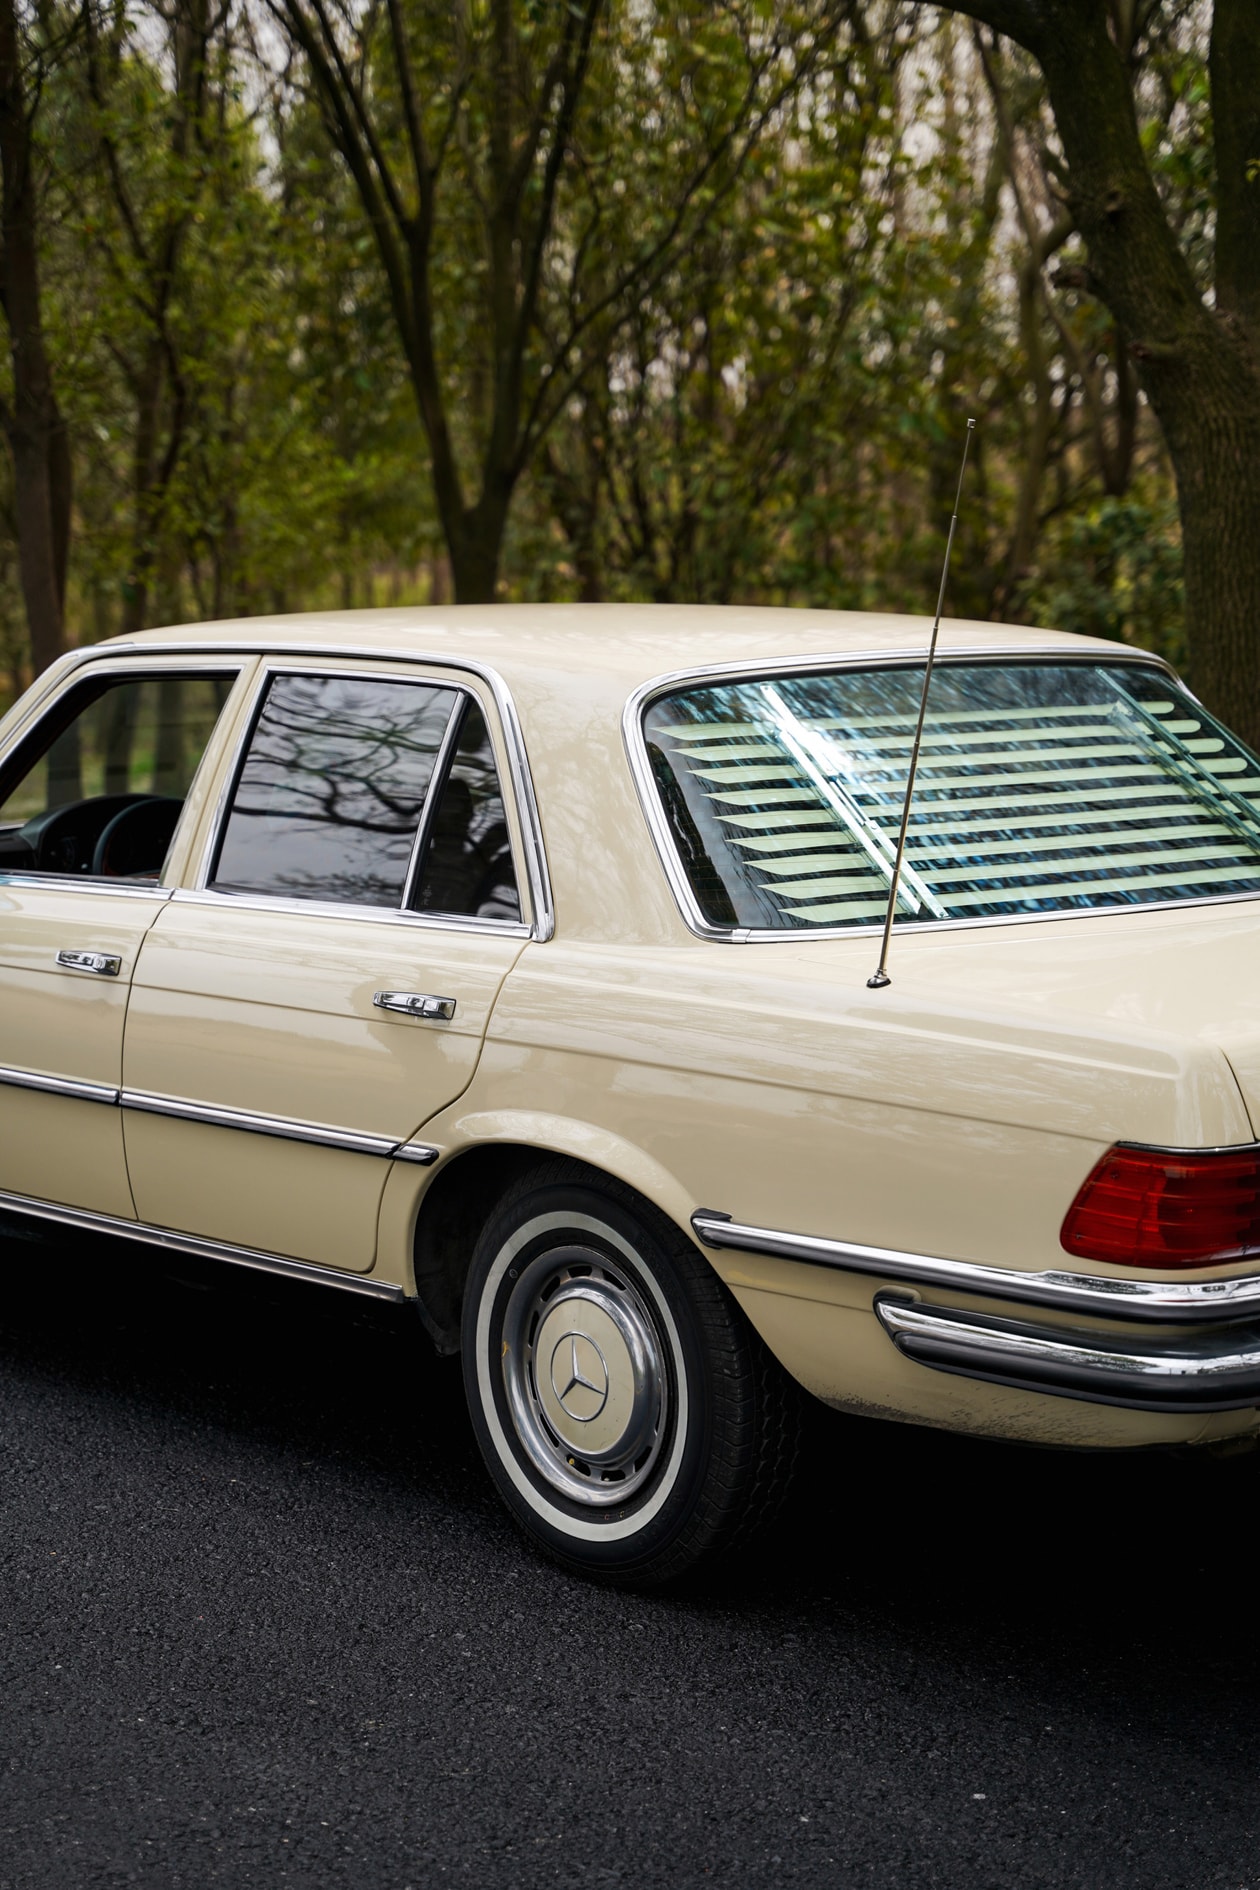  一台 70 年代的 Mercedes-Benz W116 魅力何在？PROS 主理人陈昊分享爱车故事 